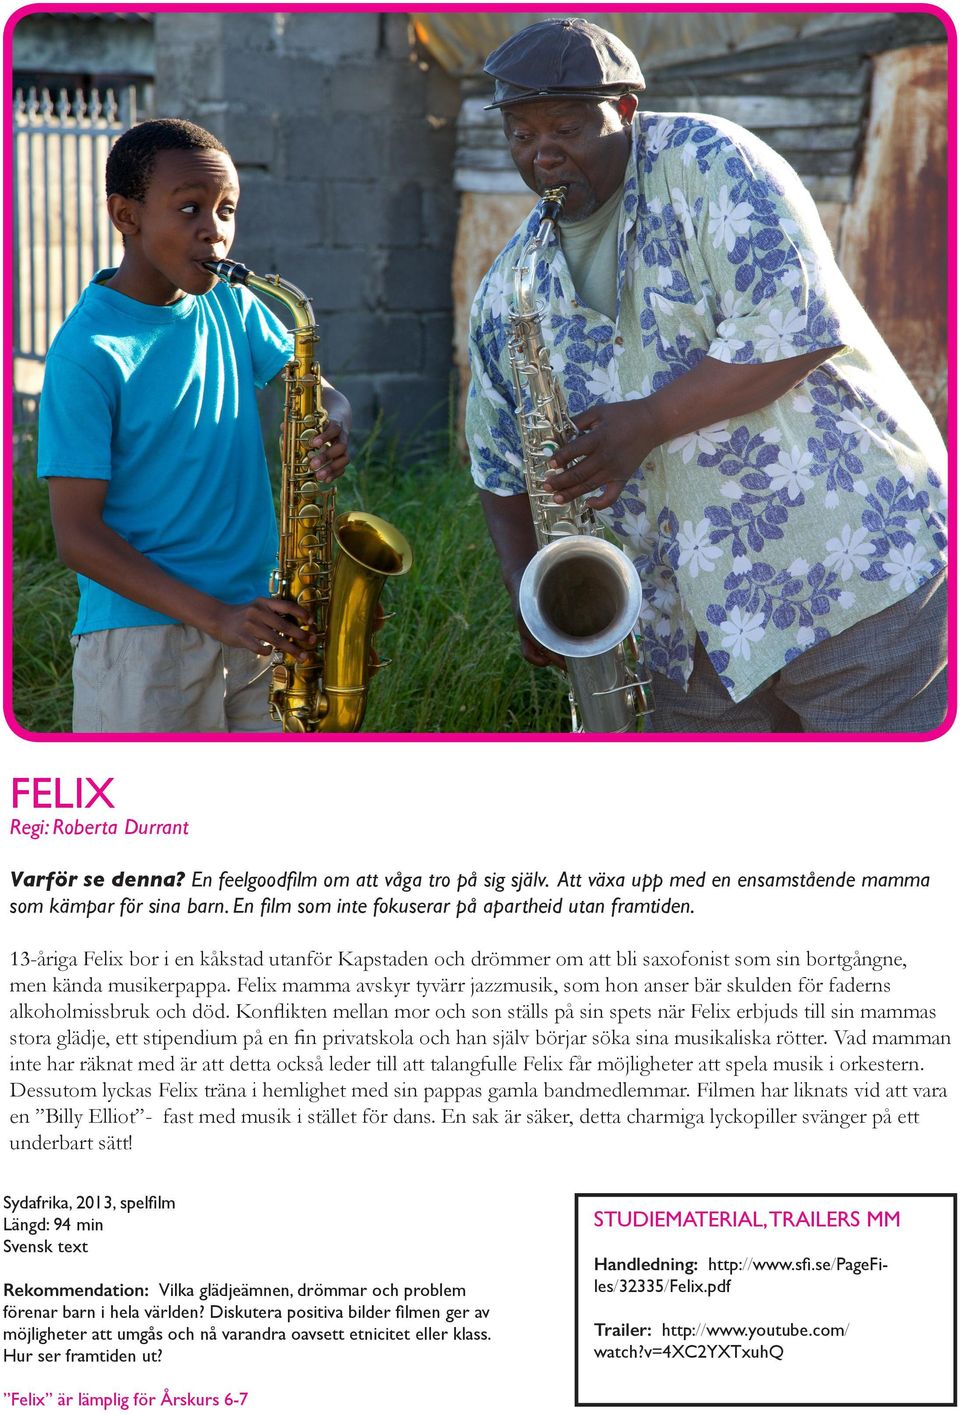 Felix mamma avskyr tyvärr jazzmusik, som hon anser bär skulden för faderns alkoholmissbruk och död.